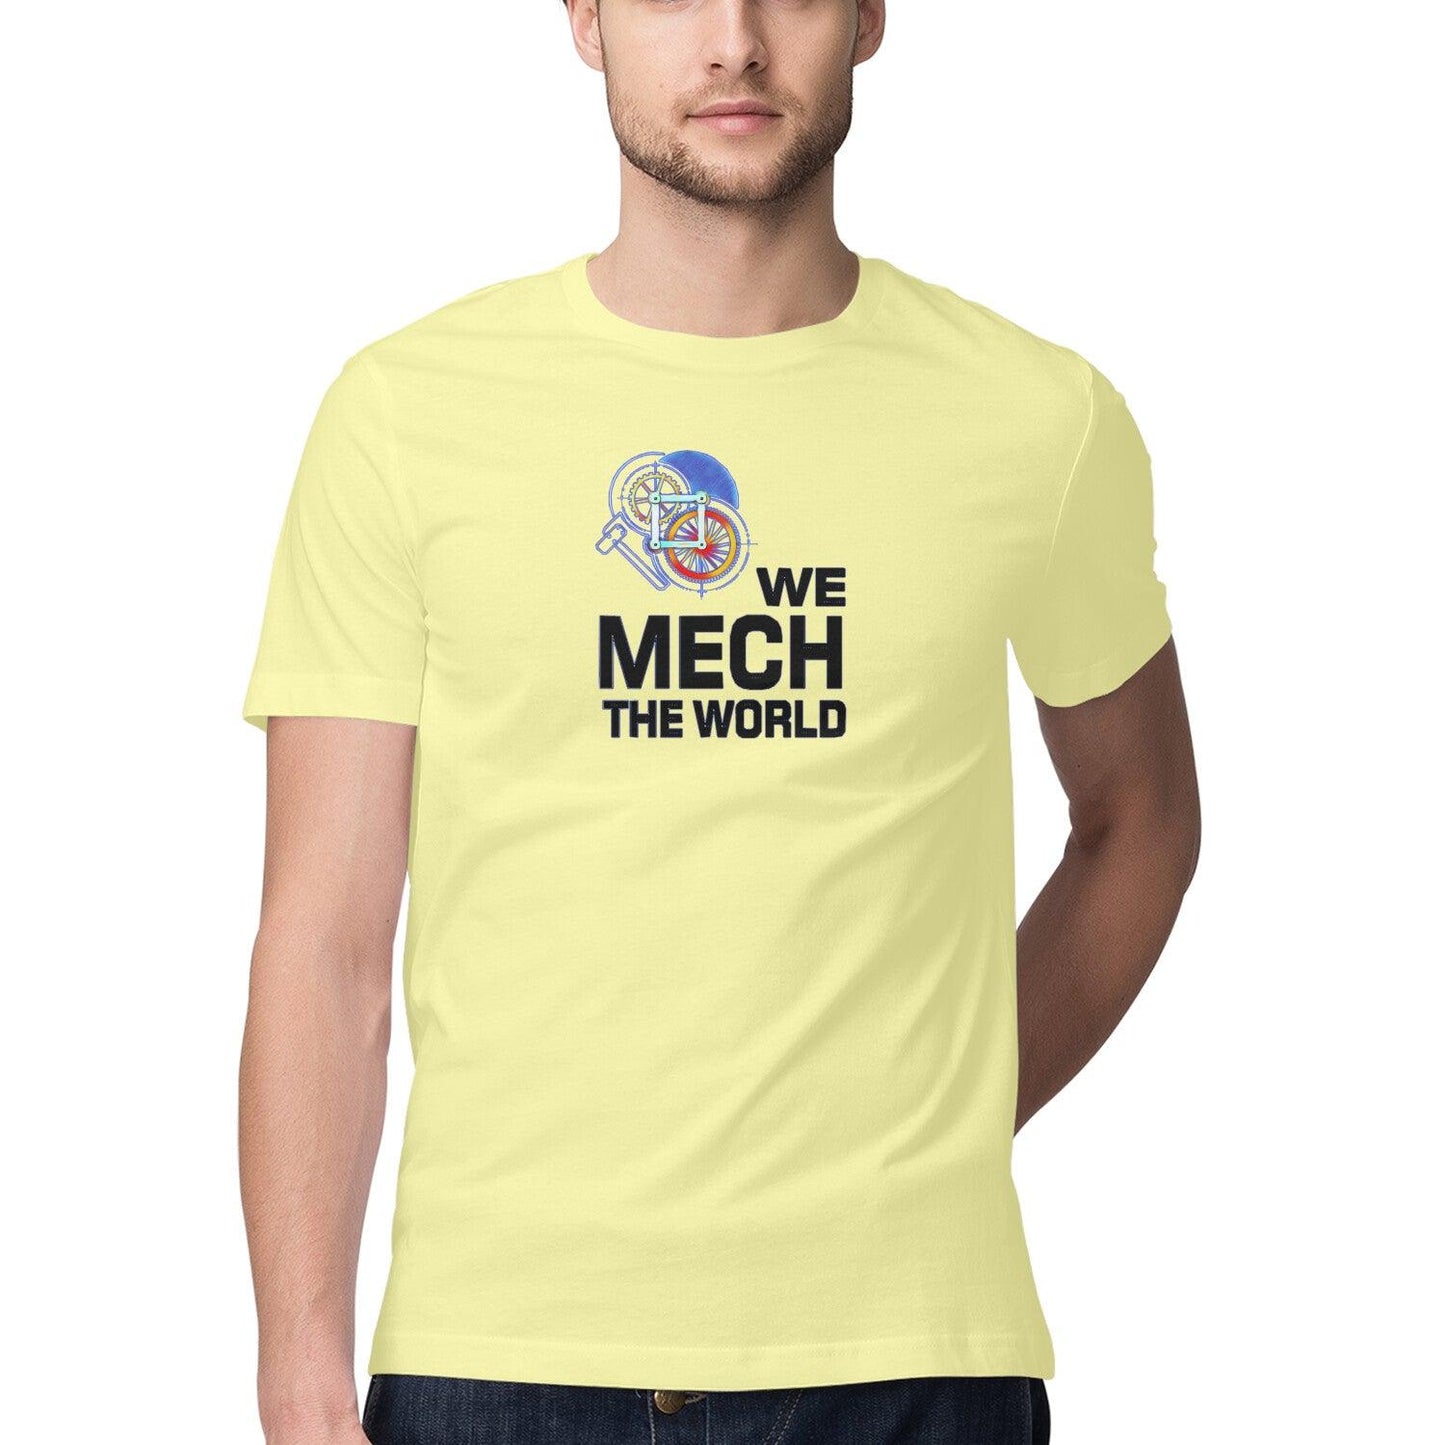 Mechanical Engineer T Shirt for Men D47